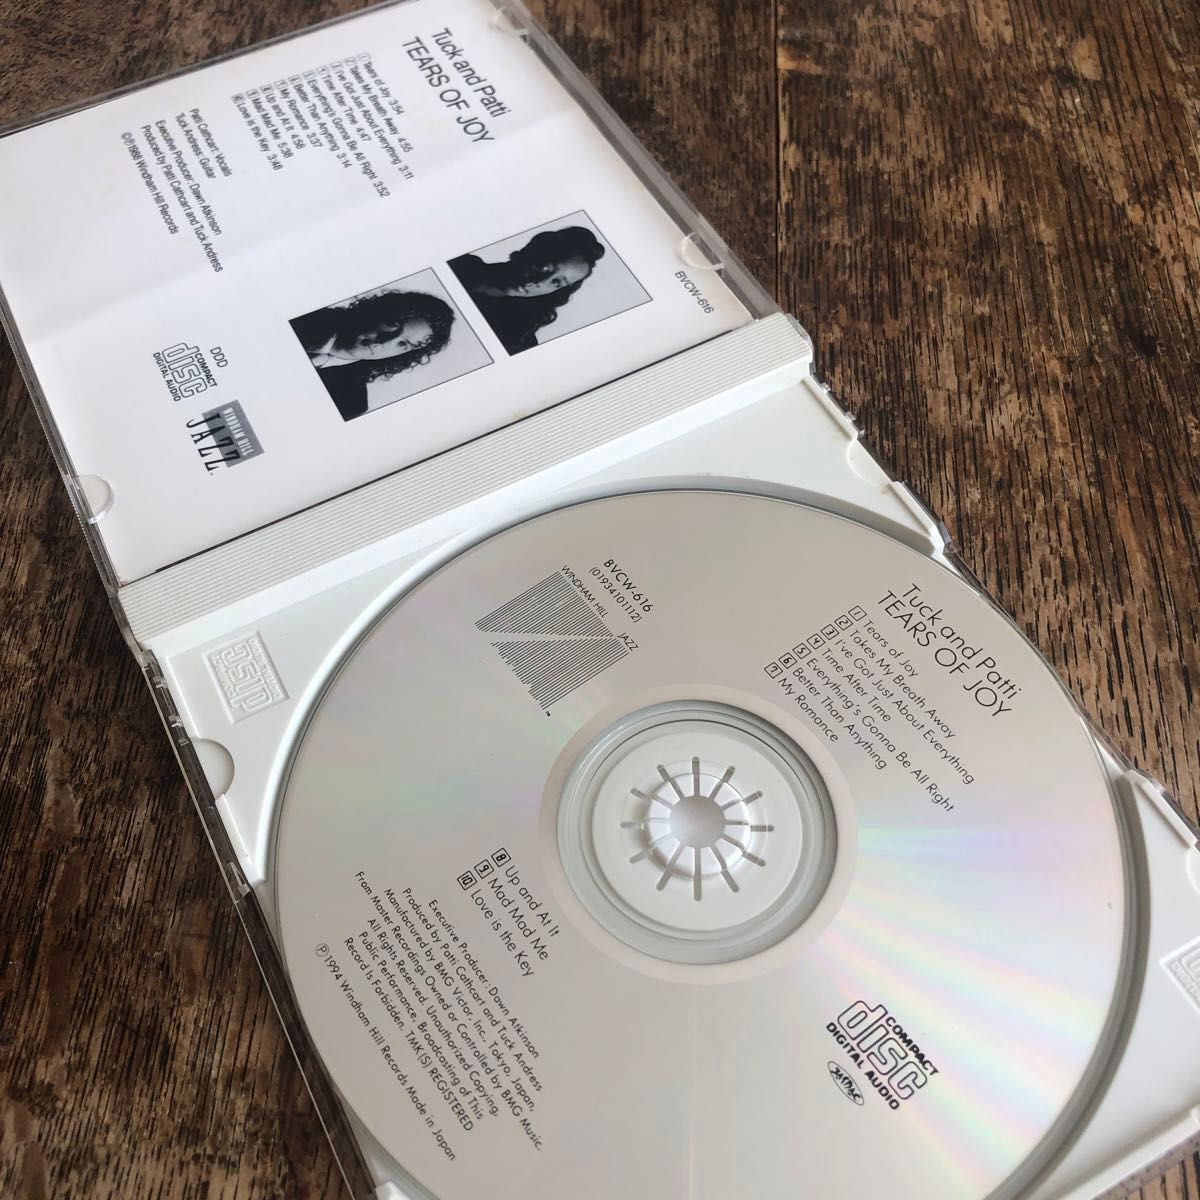 CD タック＆パティ　TEARS OF JOY Tuck and Patti タック・アンド・パティ　日本語ライナーノーツ付き